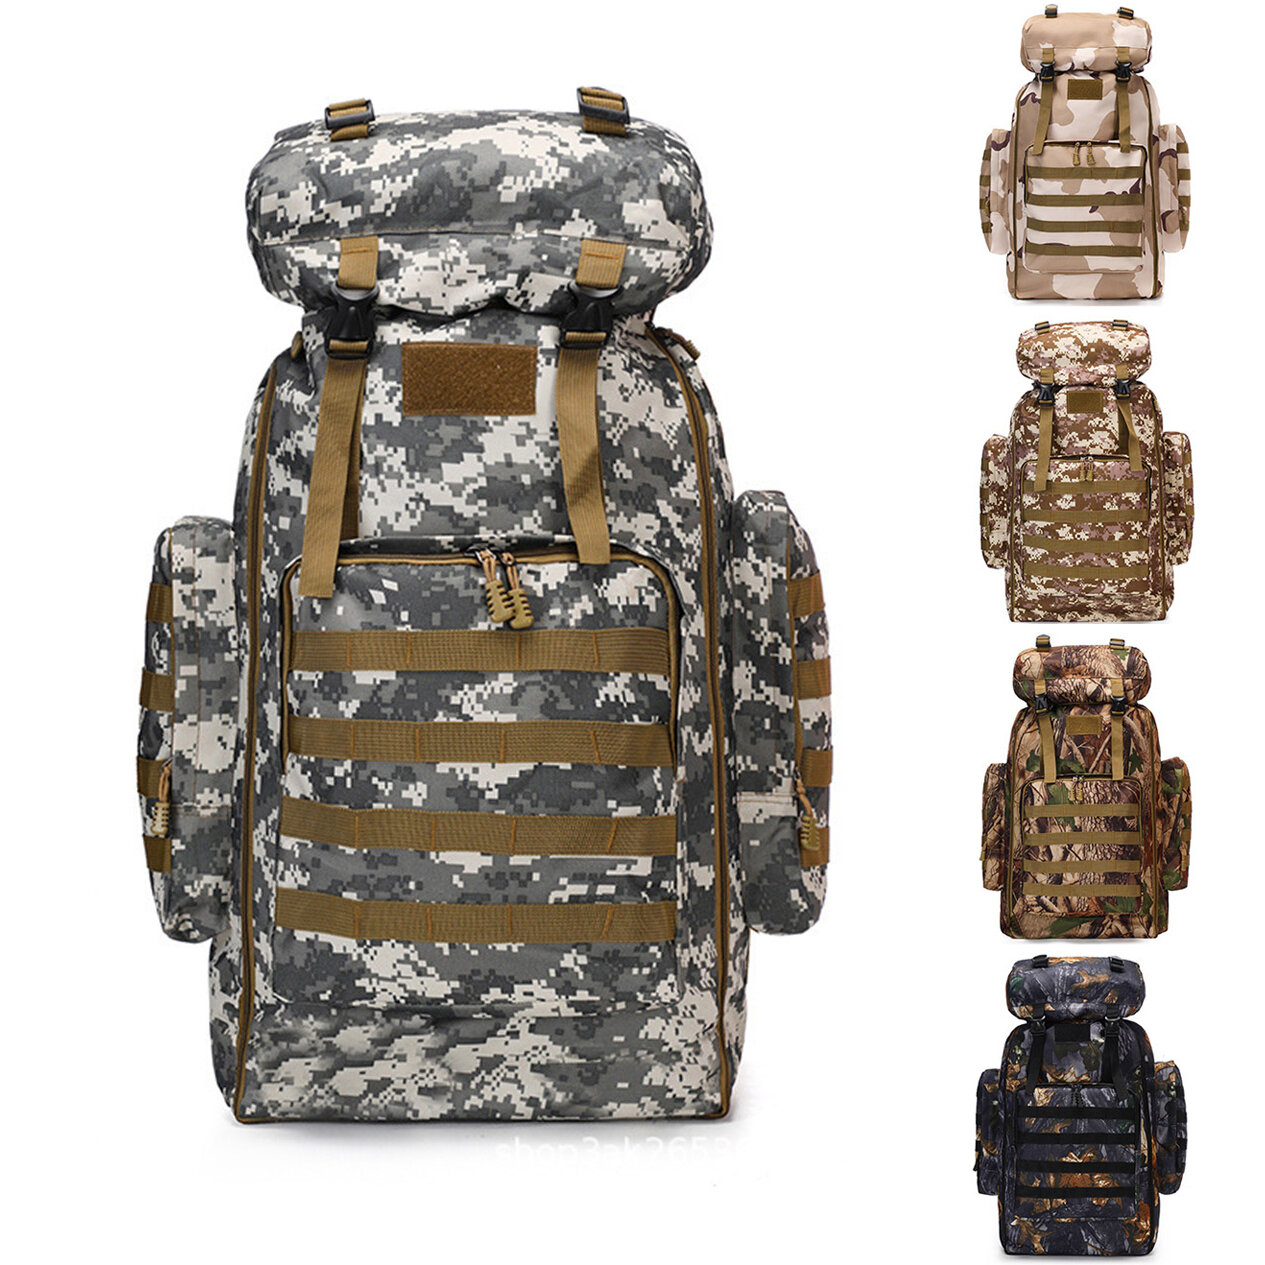 حقيبة ظهر تكتيكية عسكرية بطبعة الكامو MOLLE مقاومة للماء بسعة 80 لترًا للتخييم والسفر والمشي والتسلق في الهواء الطلق